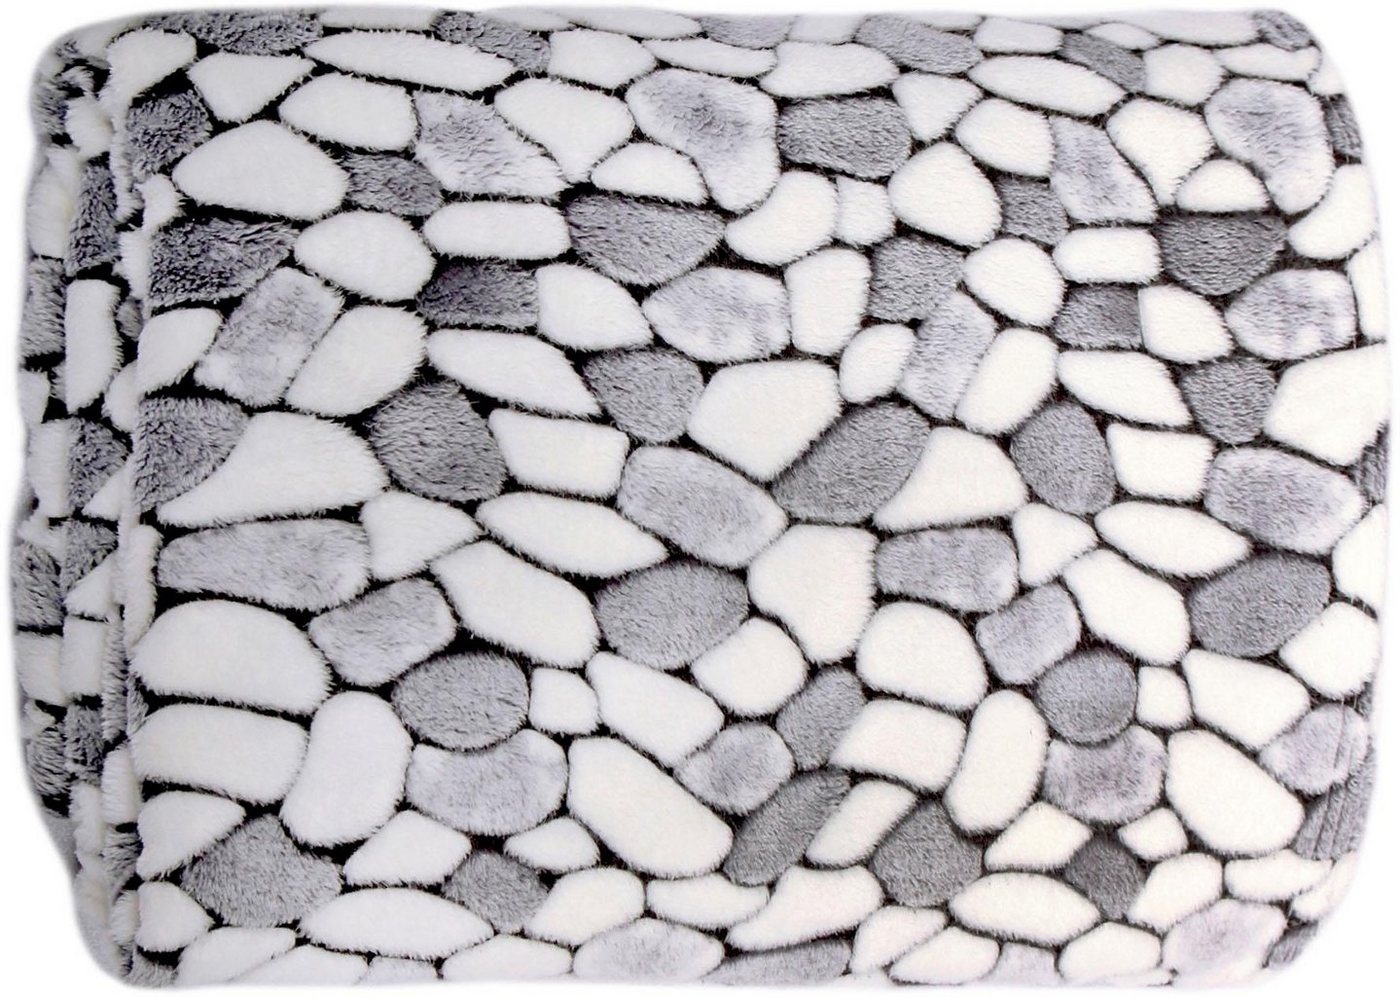 Wohndecke Stone, Delindo Lifestyle, kuschelig weiche Coral Fleece Decke in Steinoptik, Kuscheldecke grau 150 cm x 200 cm